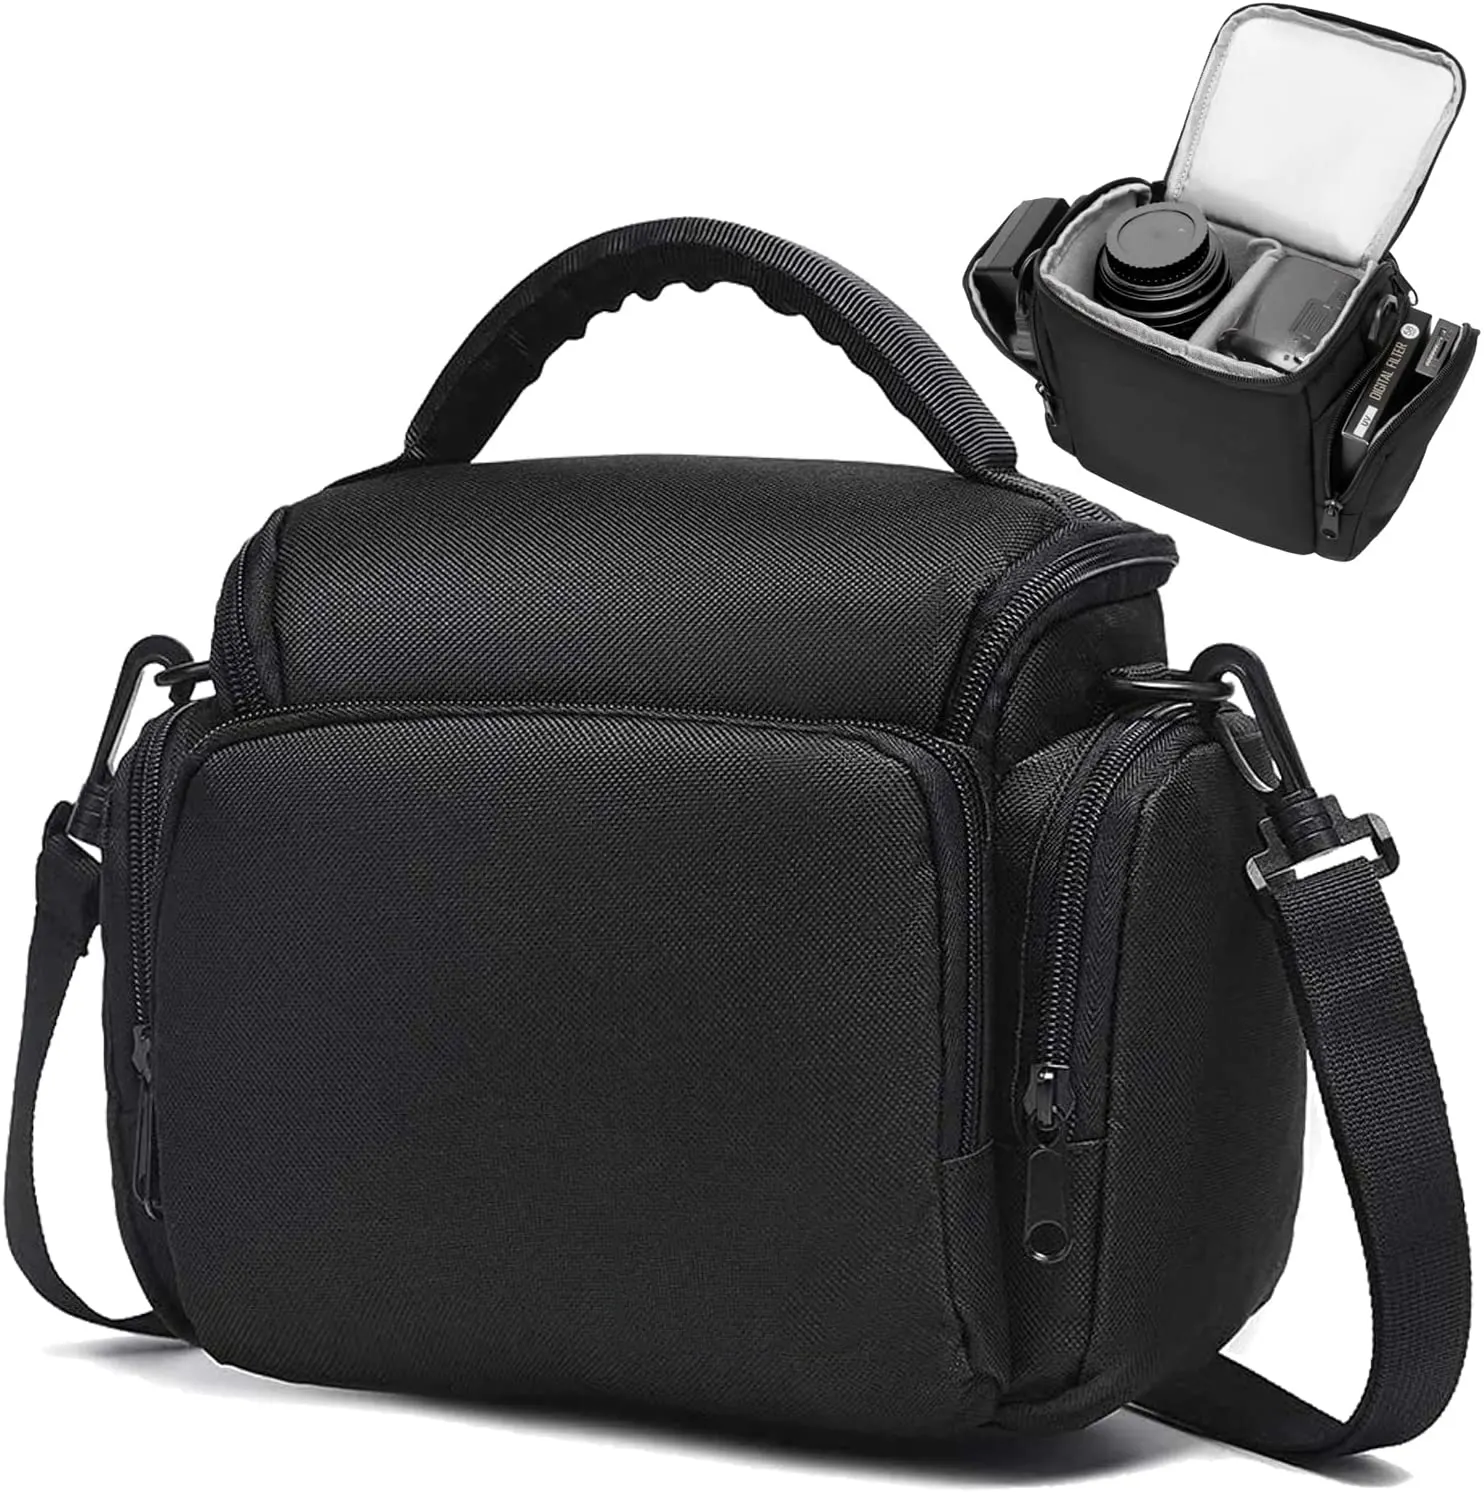 BSCI OEM ODM fabrika su geçirmez kamera tote çanta omuz kamera çantası kamera kılıfı